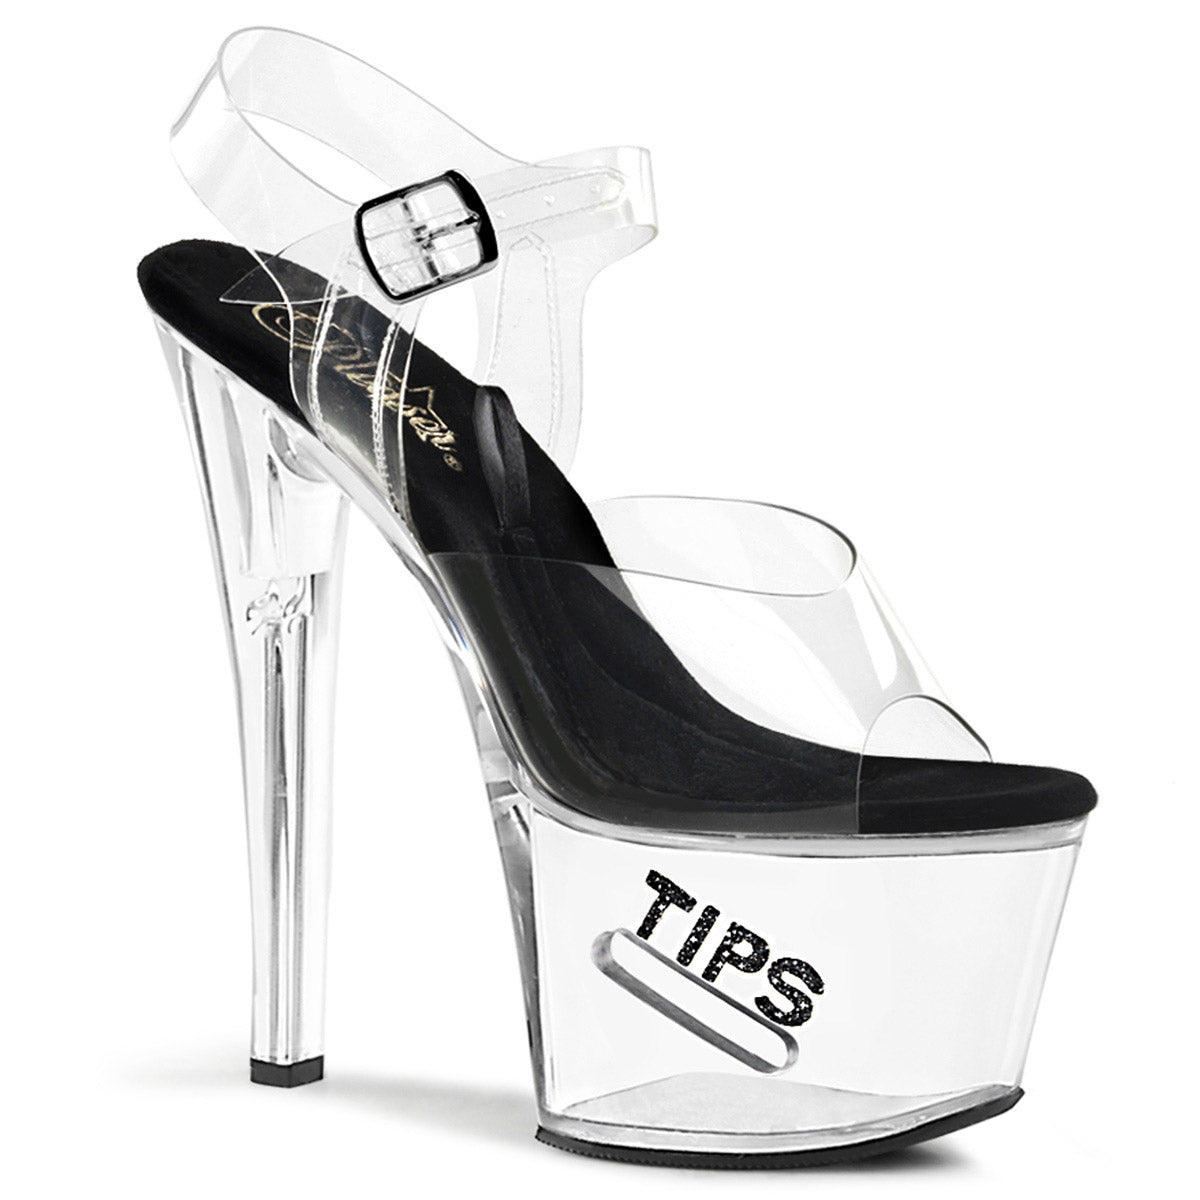 Tip Jar Platform Stiletto Strappy Sandals Stripper High Heels Shoes Pleaser Pleaser TIPJAR/708/5